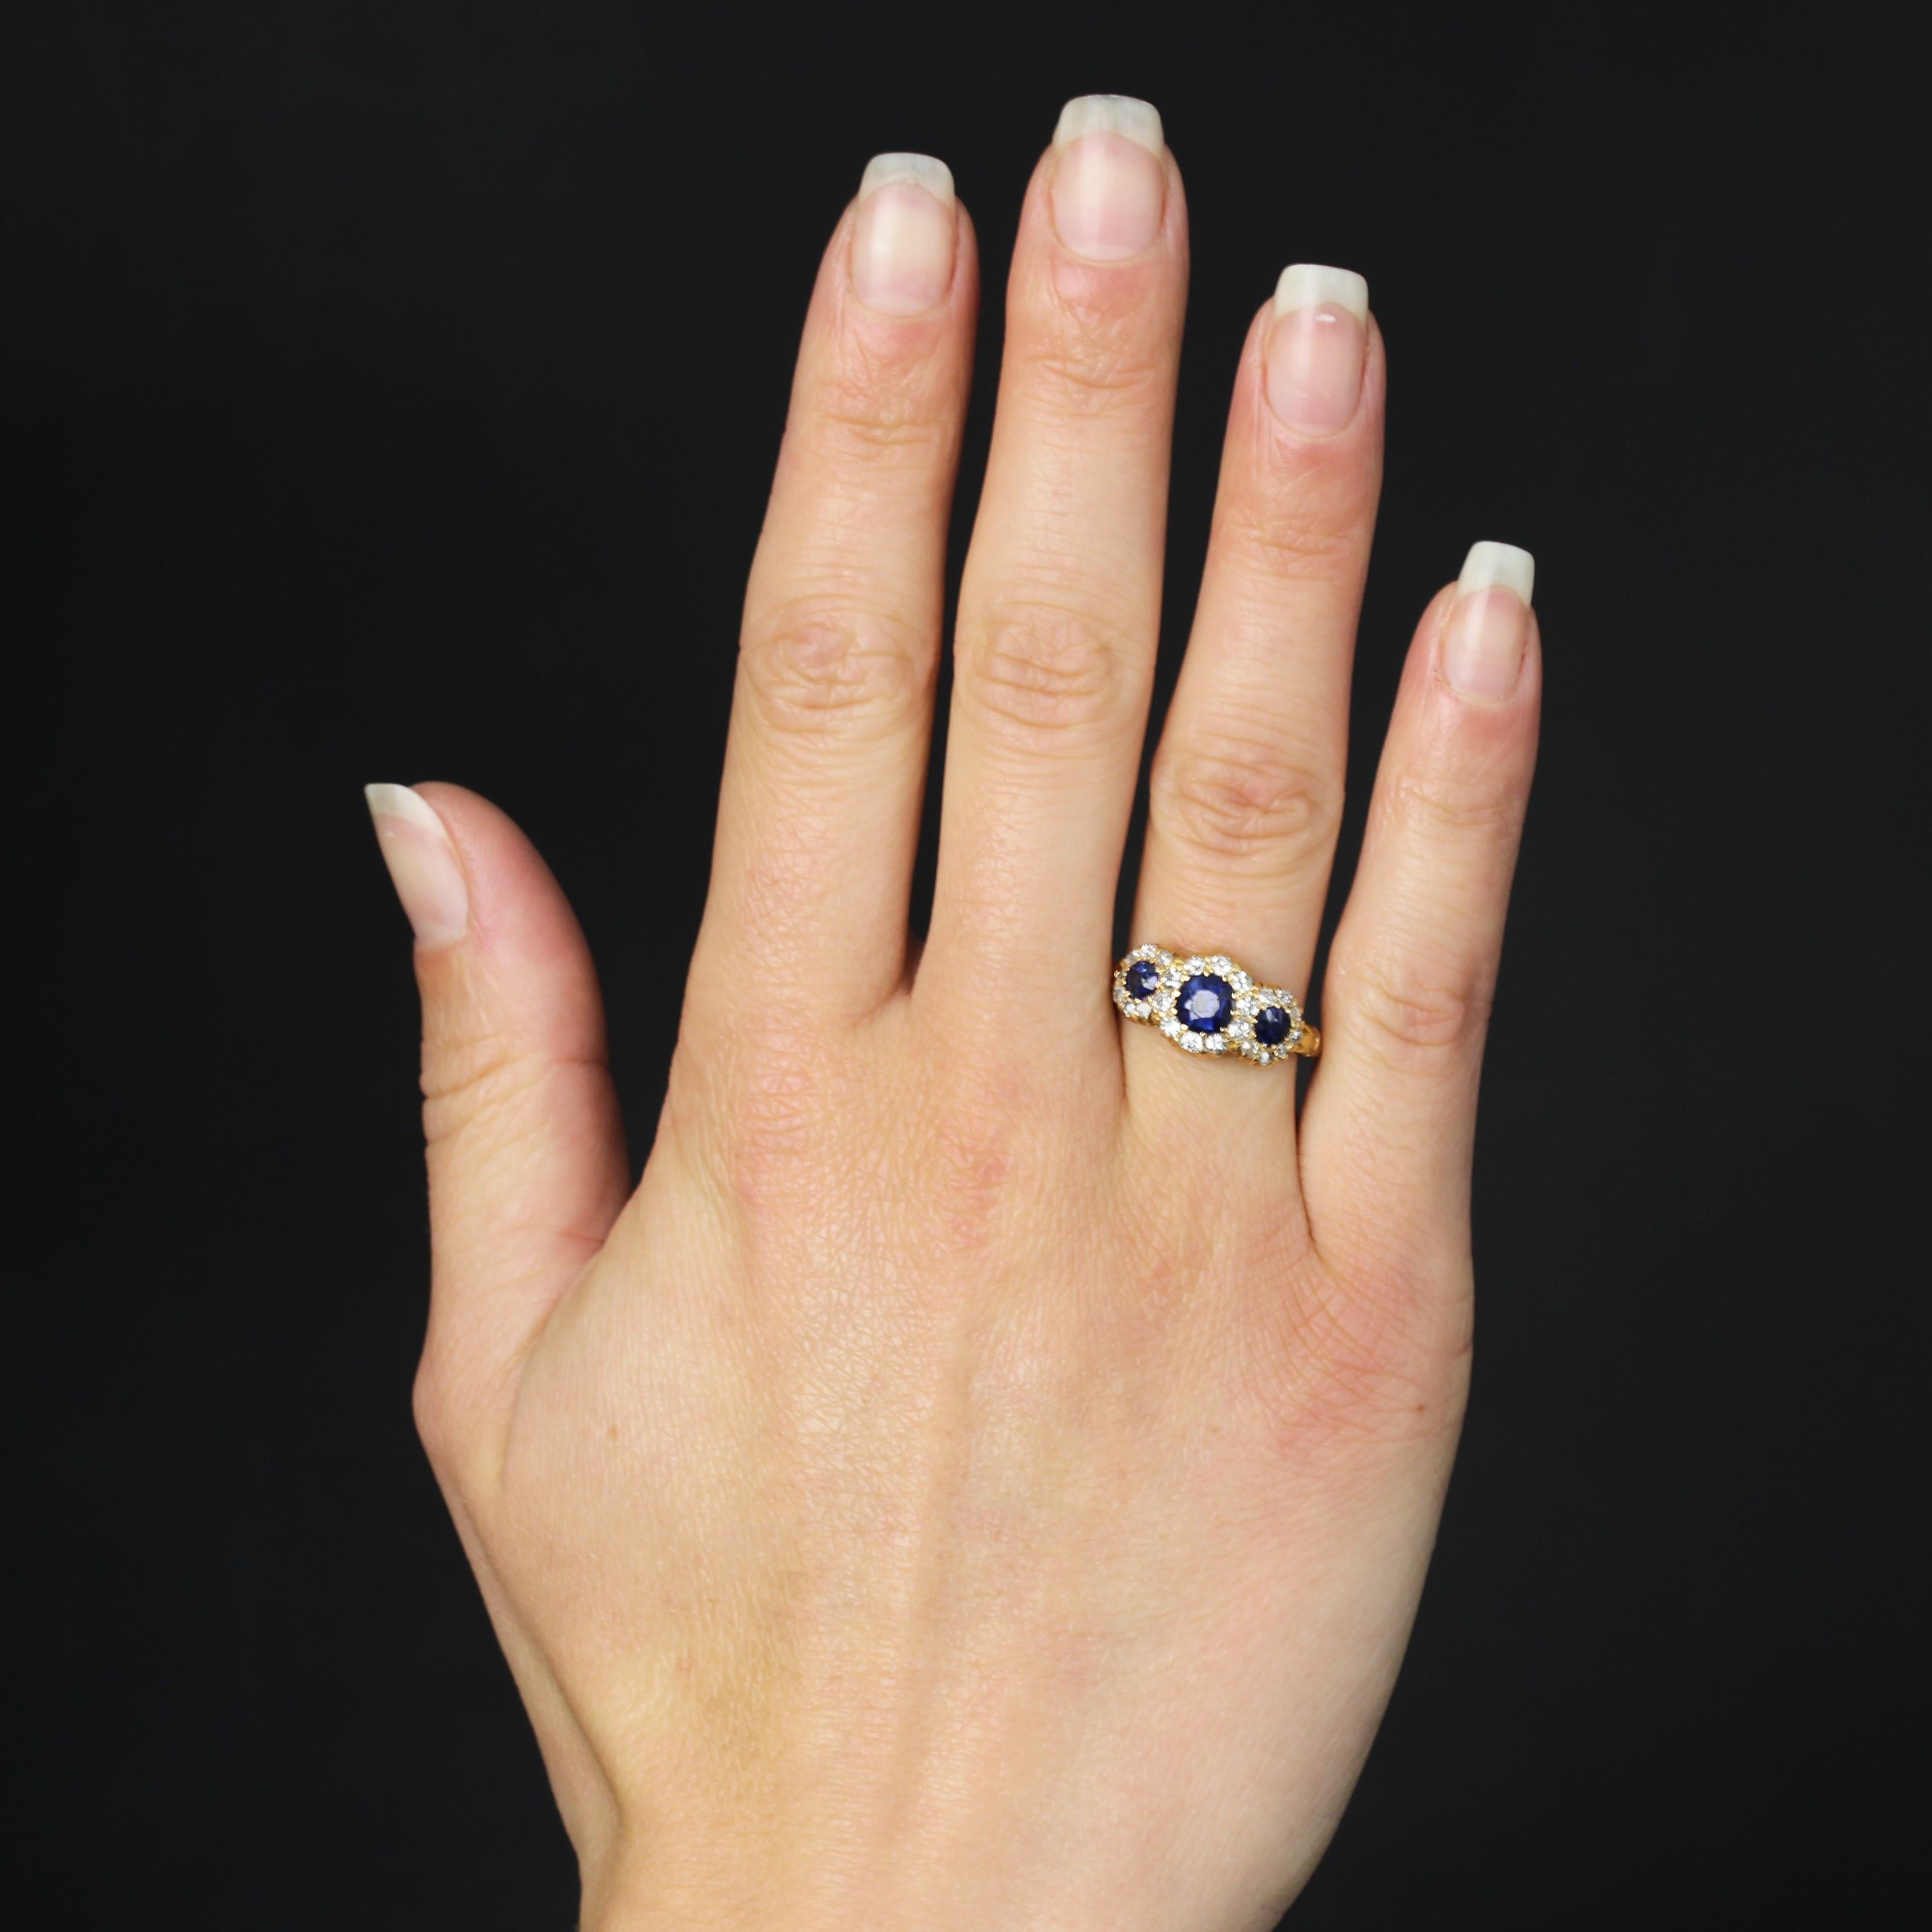 Ring aus 18 Karat Gelbgold, Eulenpunze.
Antiker Ring im Strumpfbandstil, besetzt mit 3 runden blauen Saphiren an der Spitze, die jeweils von Diamanten im Antikschliff umgeben sind, die in Krallen gehalten werden. Der Anfang des Rings ist auf beiden